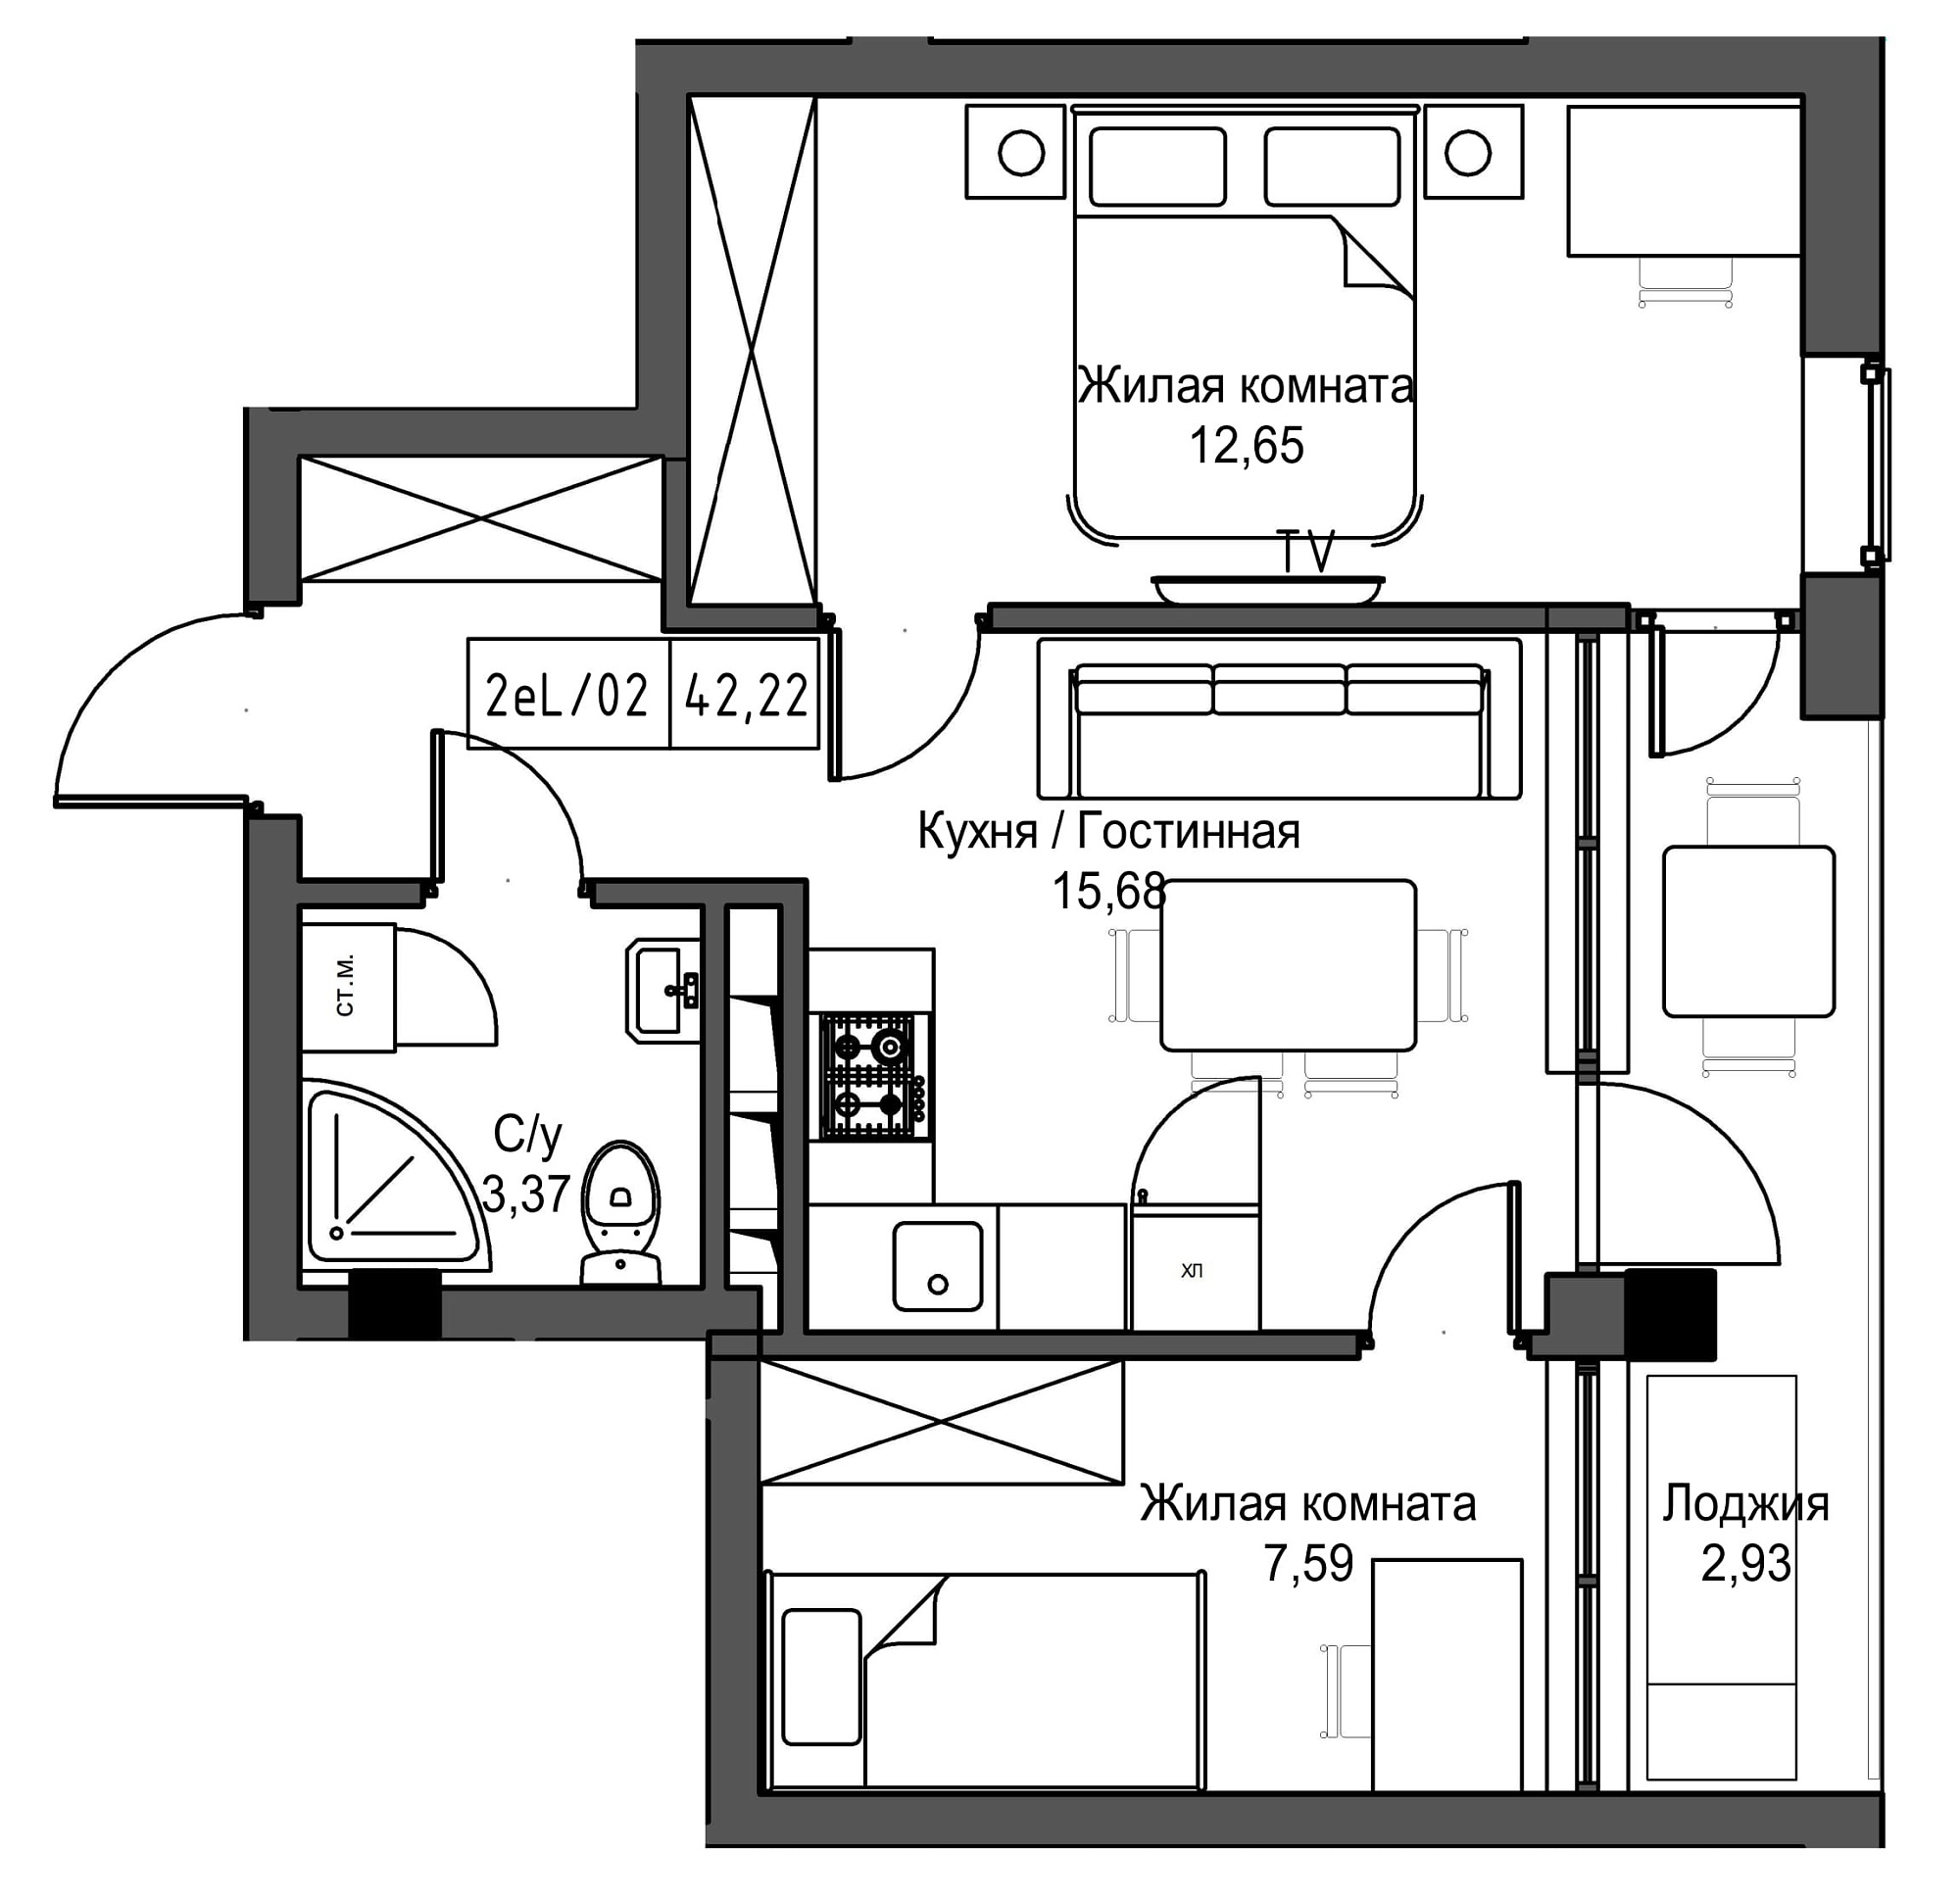 Планировка 2-к квартира площей 42.22м2, UM-002-09/0082.